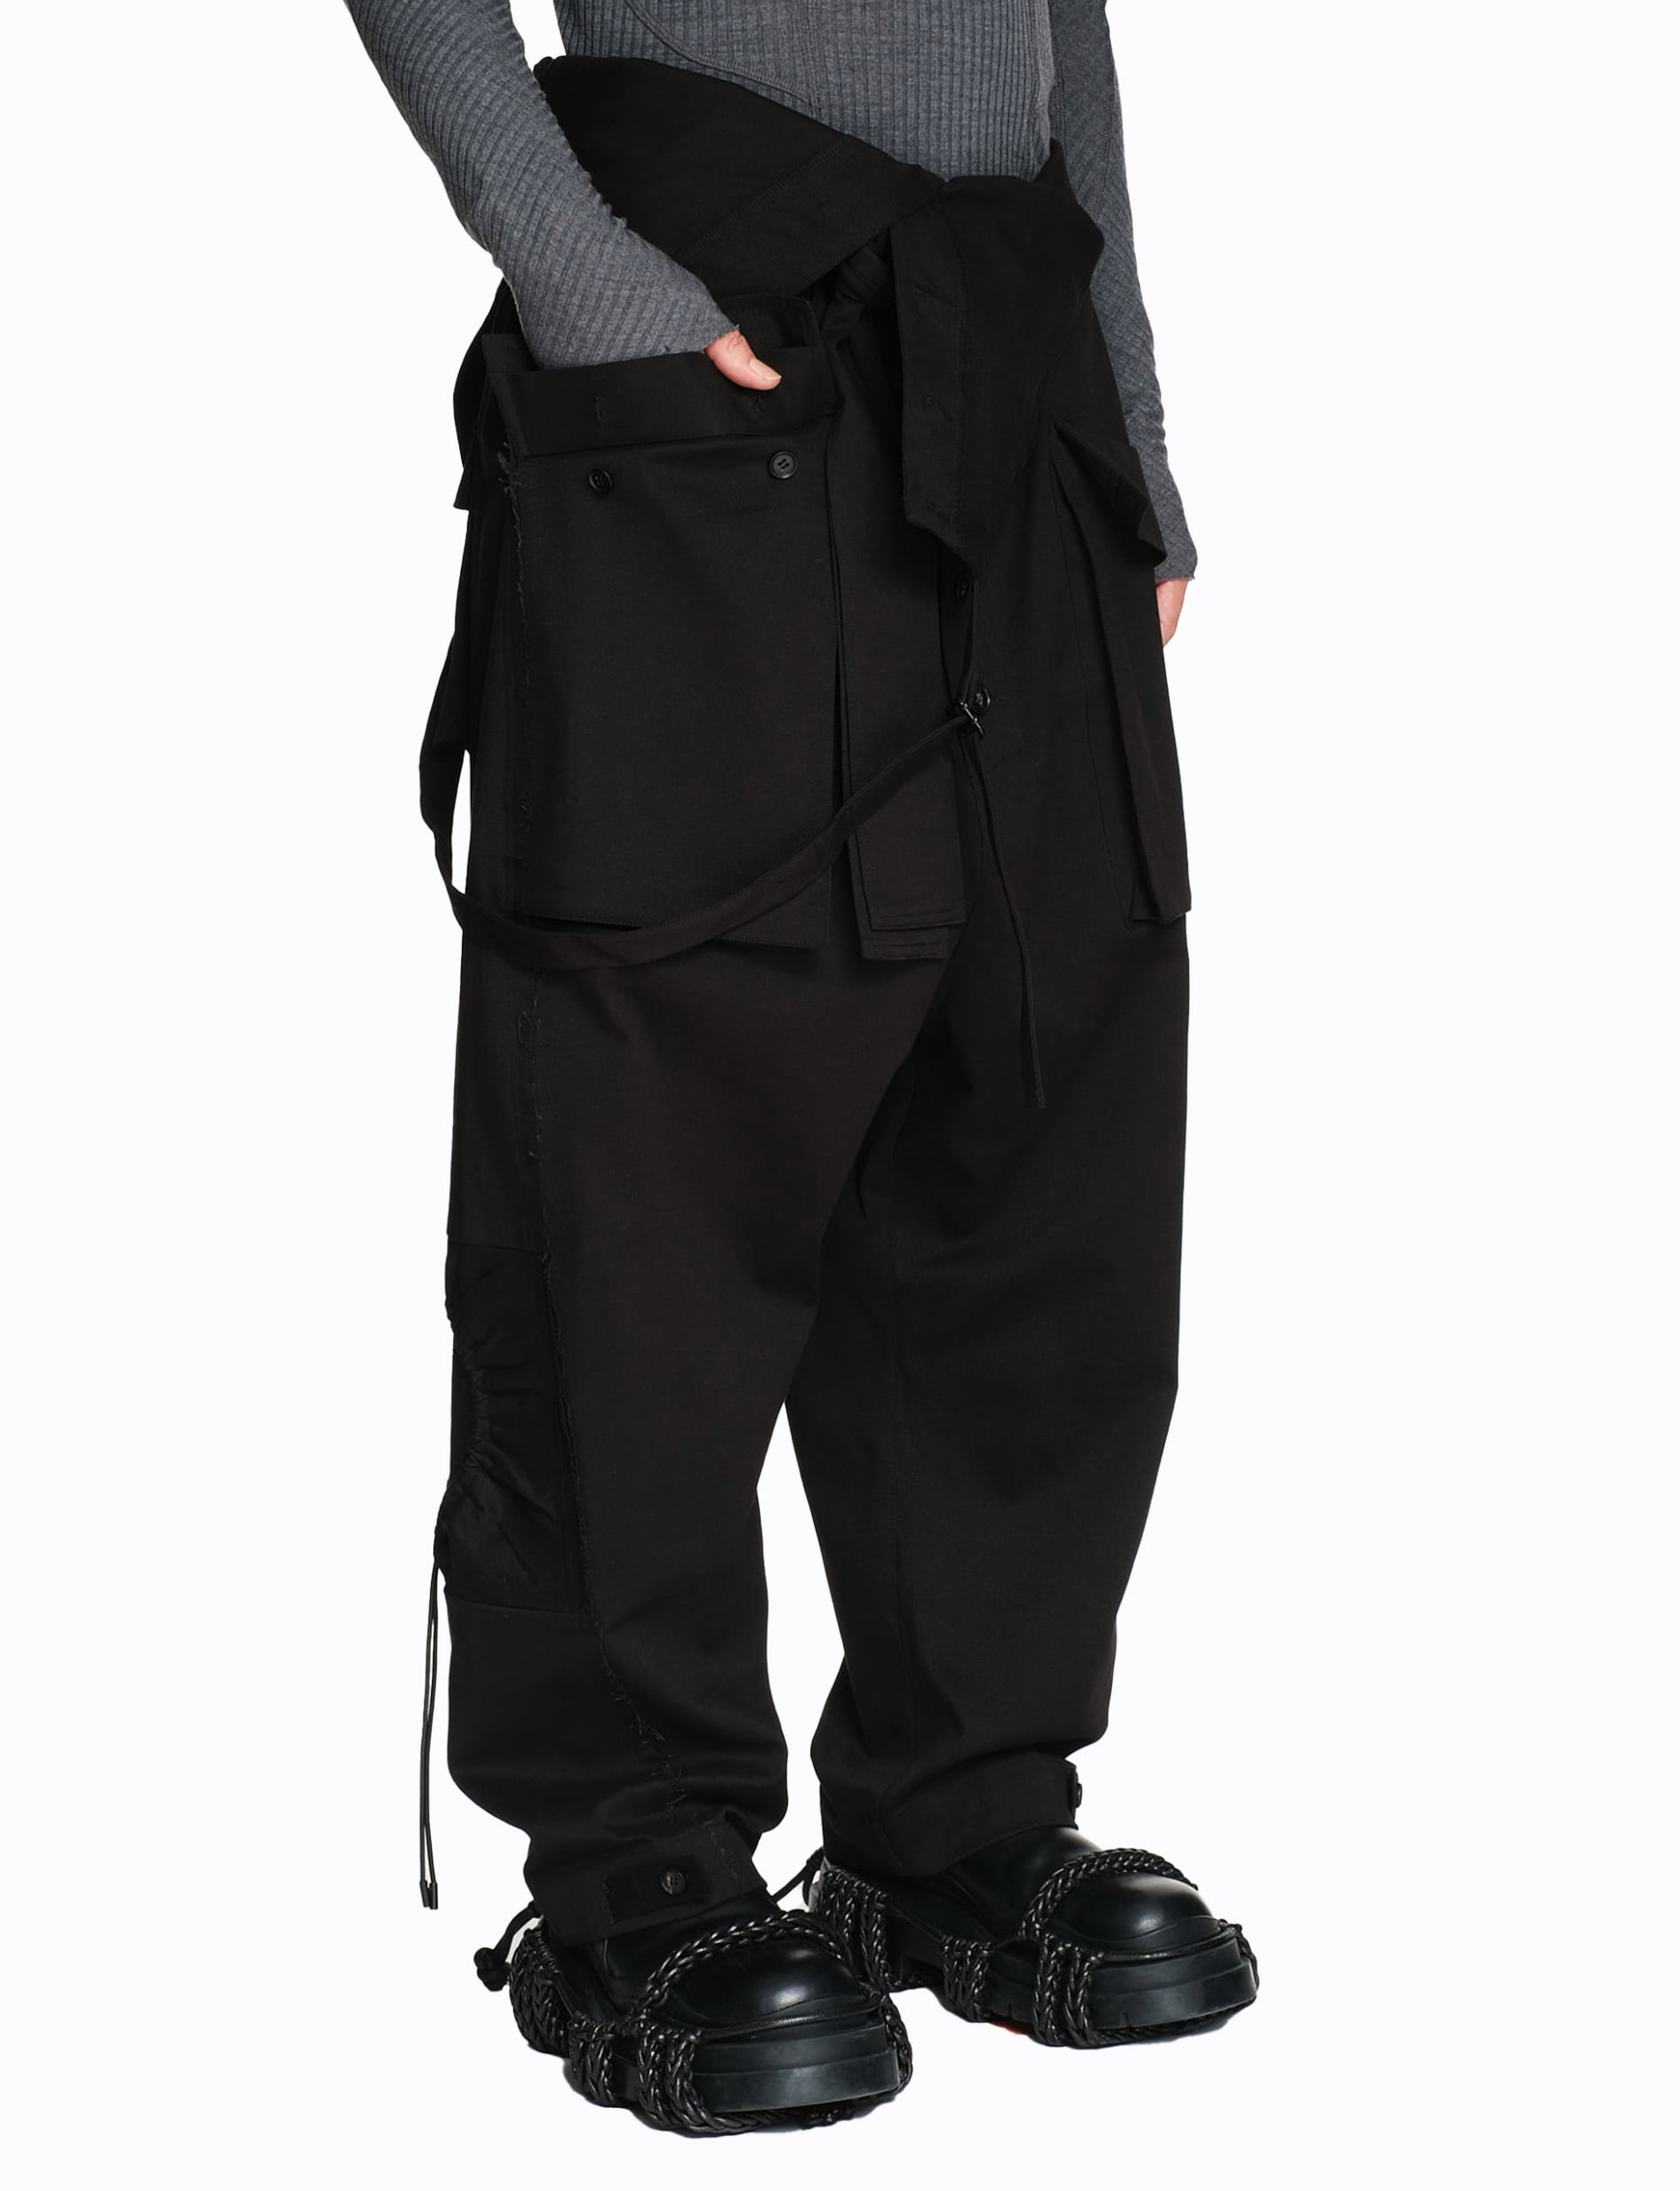 Vorian jumpsuit (BLACK)